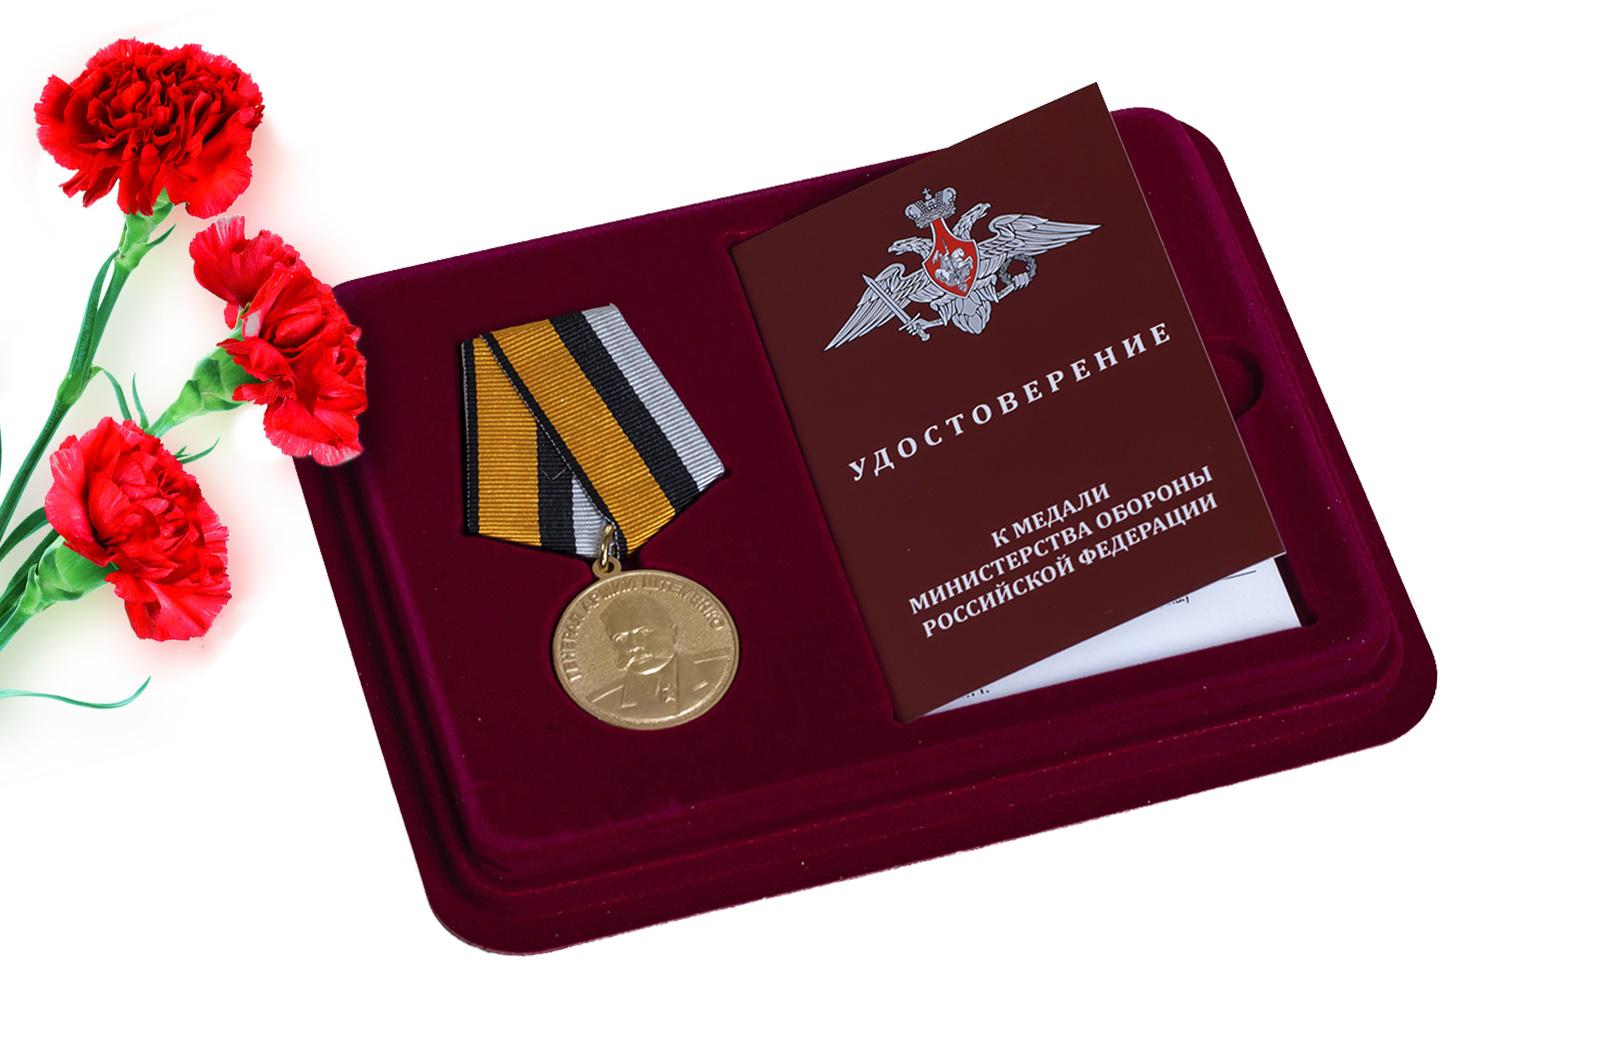 Купить медаль Генерал армии Штеменко в футляре с удостоверением оптом или в розницу